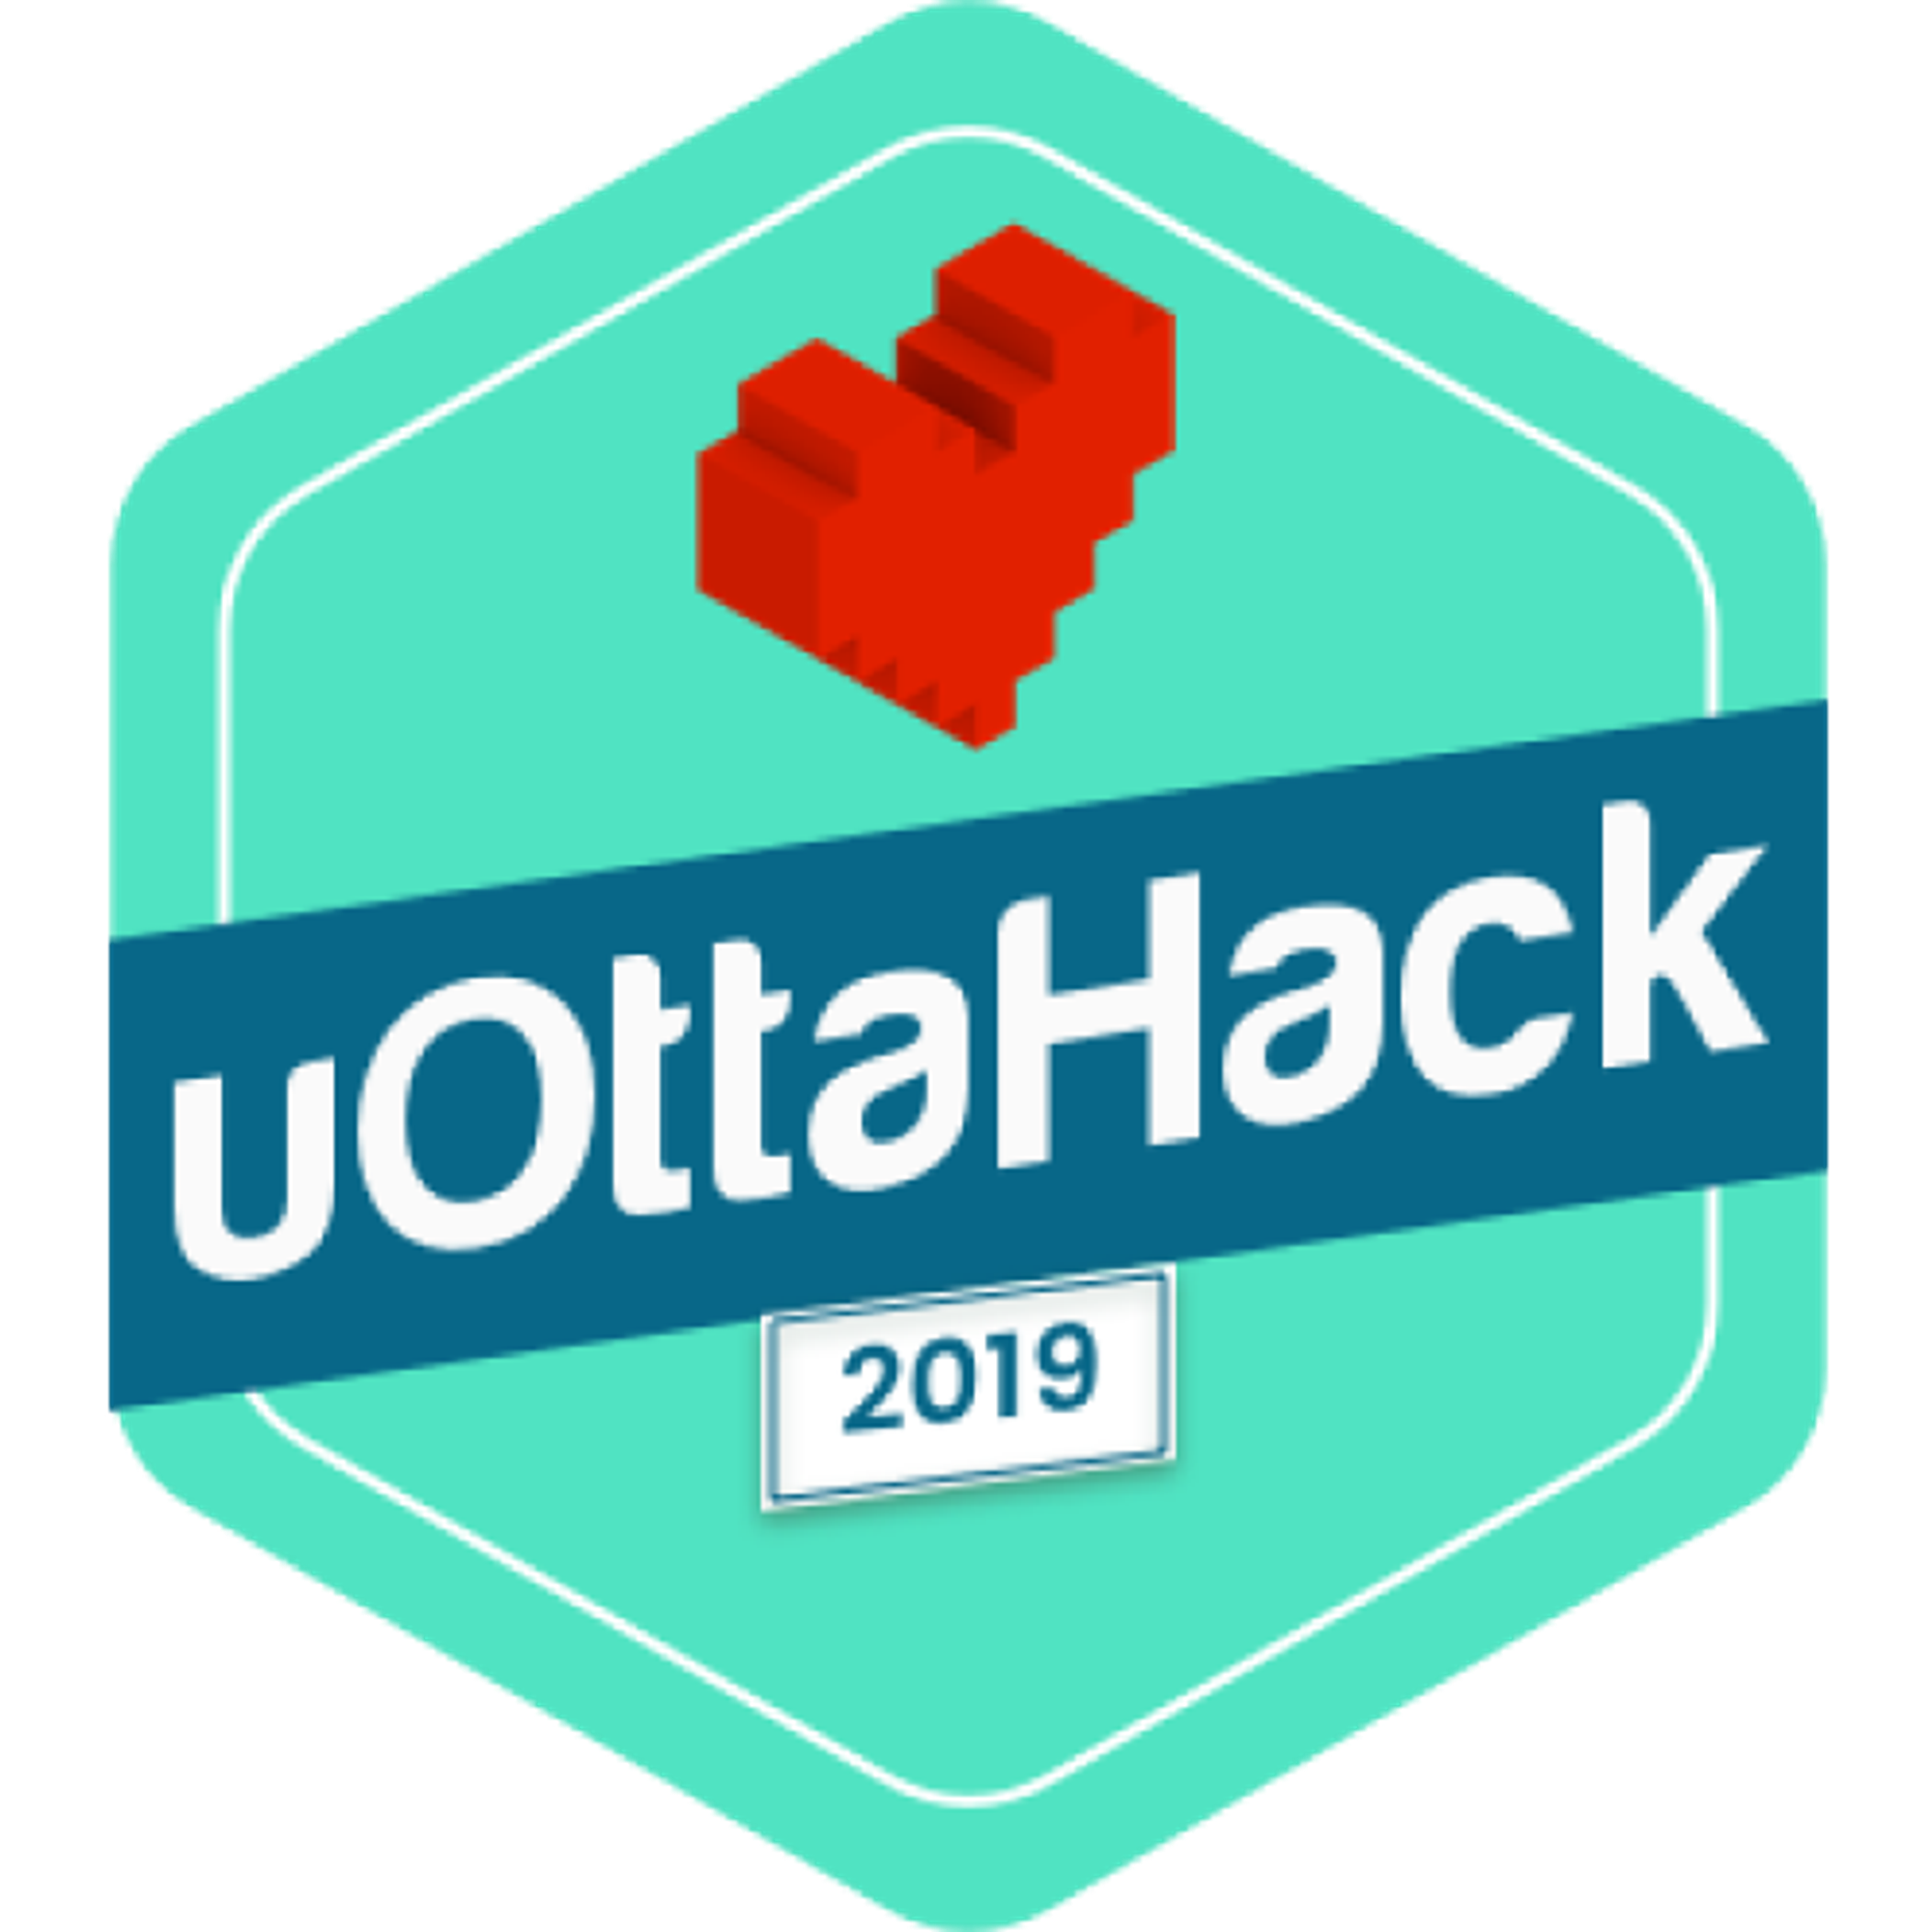 2019: uOttaHack II